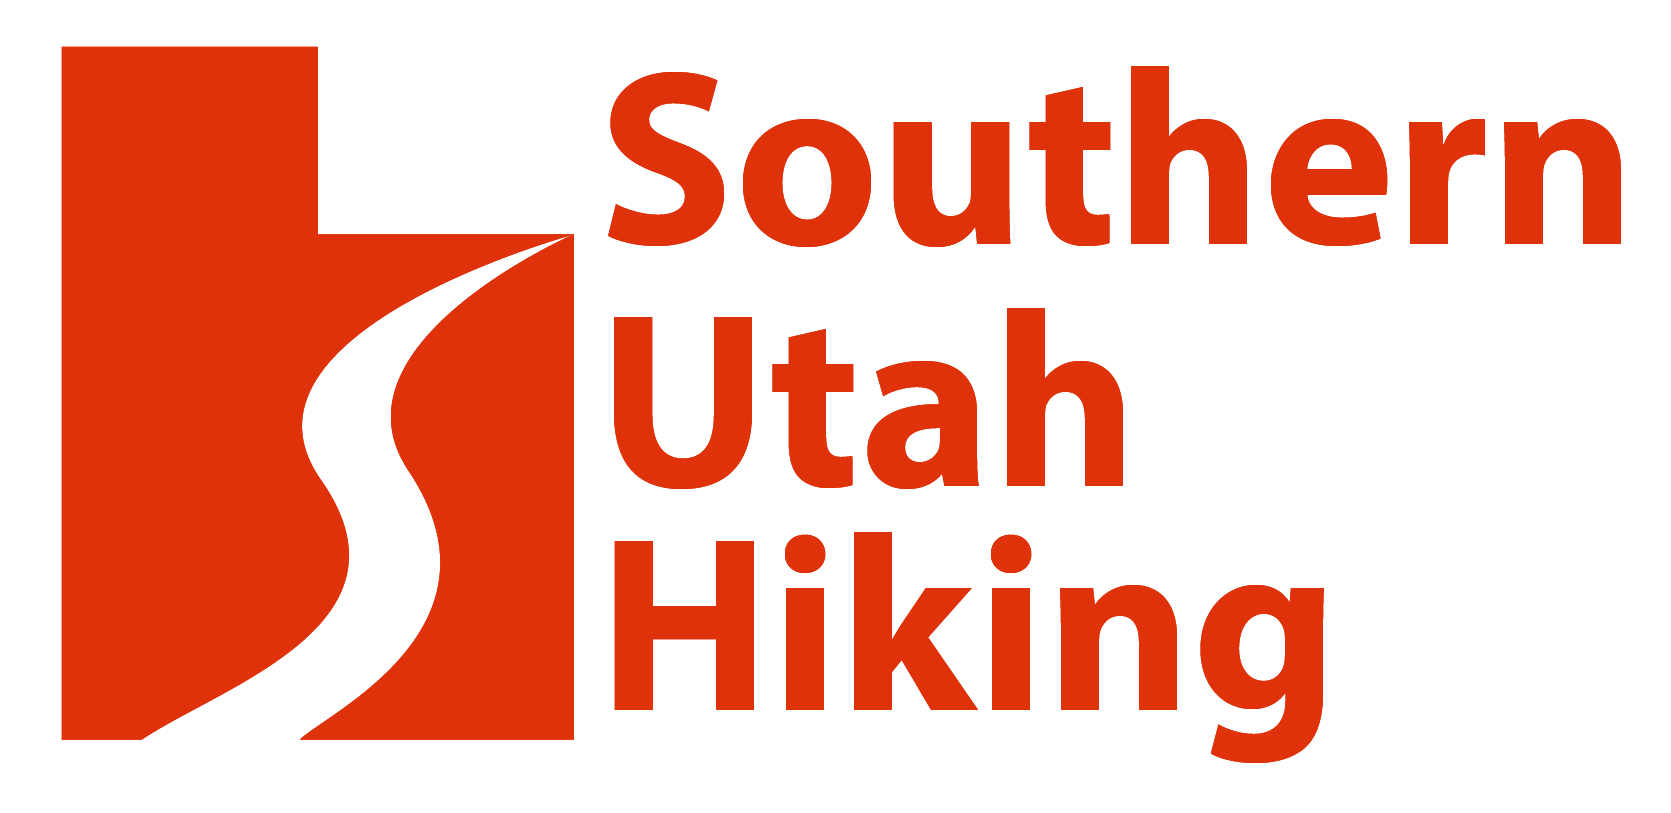 Southern Utah Hiking